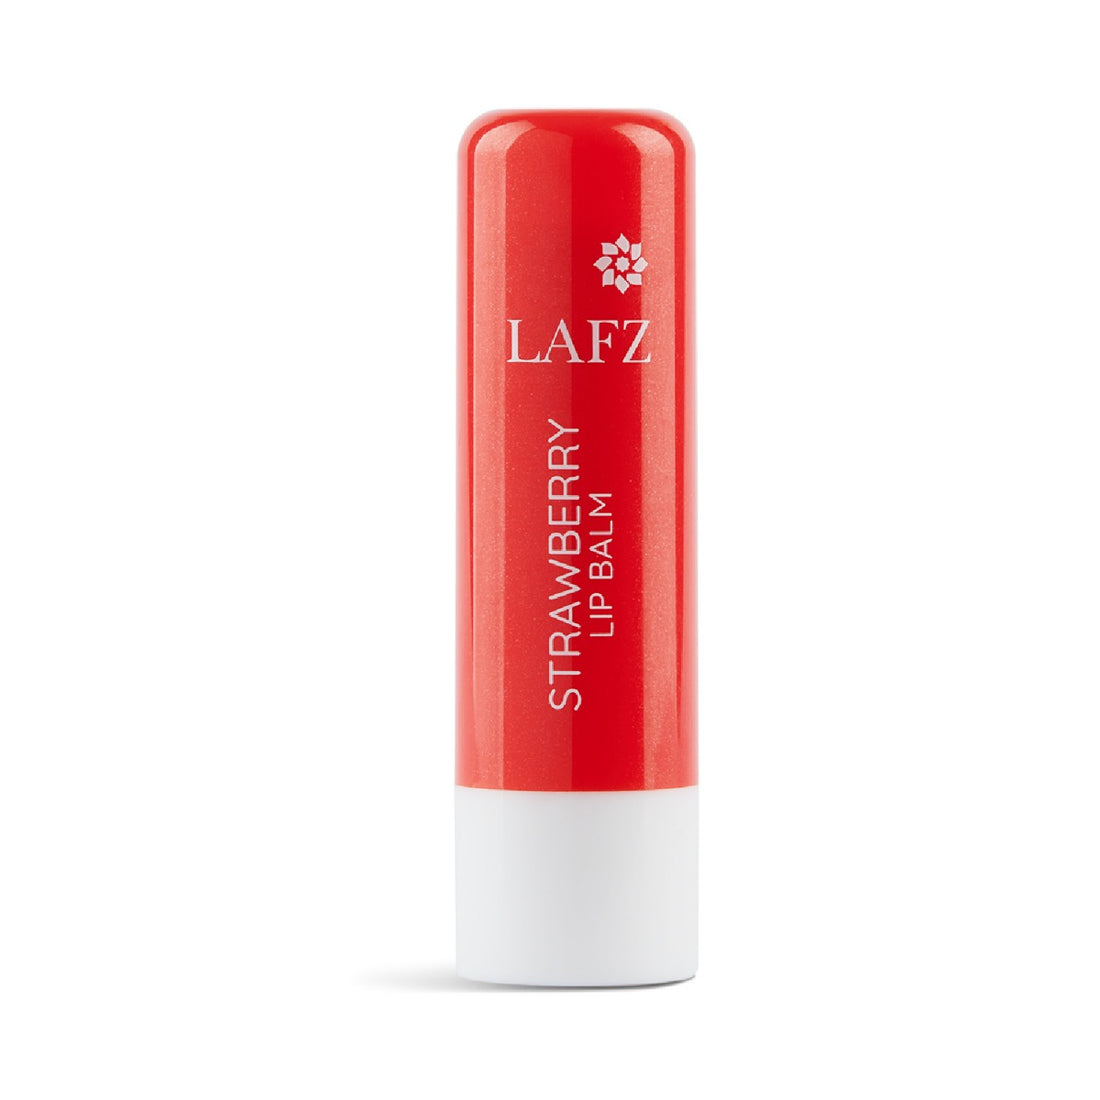 Lafz Moisturizing Lip Balm (4.5g) - Strawberry